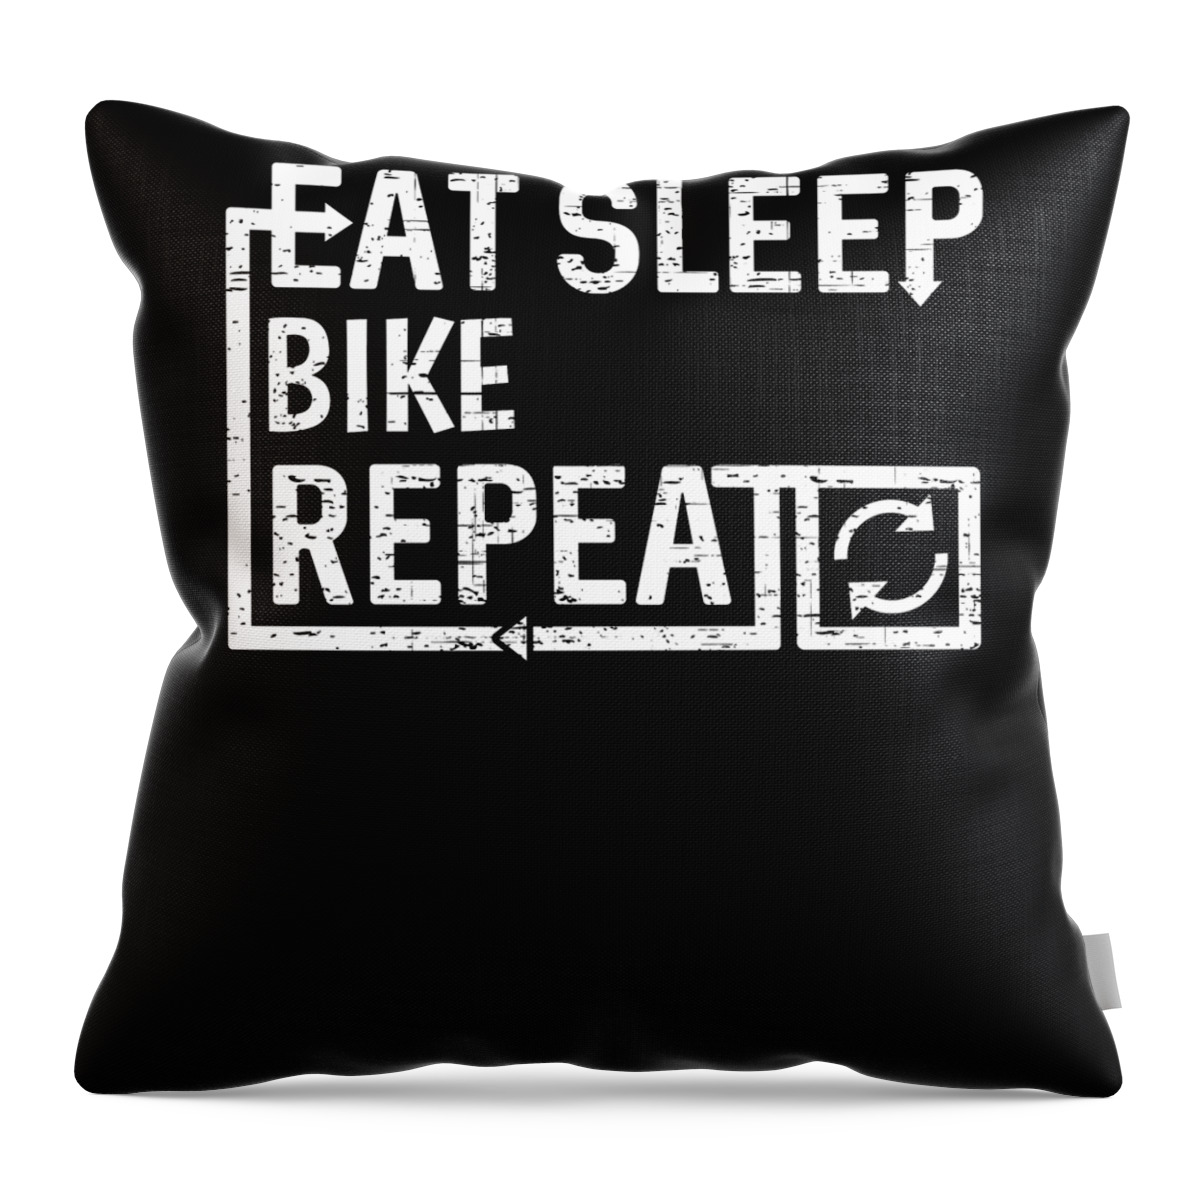 Cool Throw Pillow featuring the digital art Eat Sleep Bike by Flippin Sweet Gear